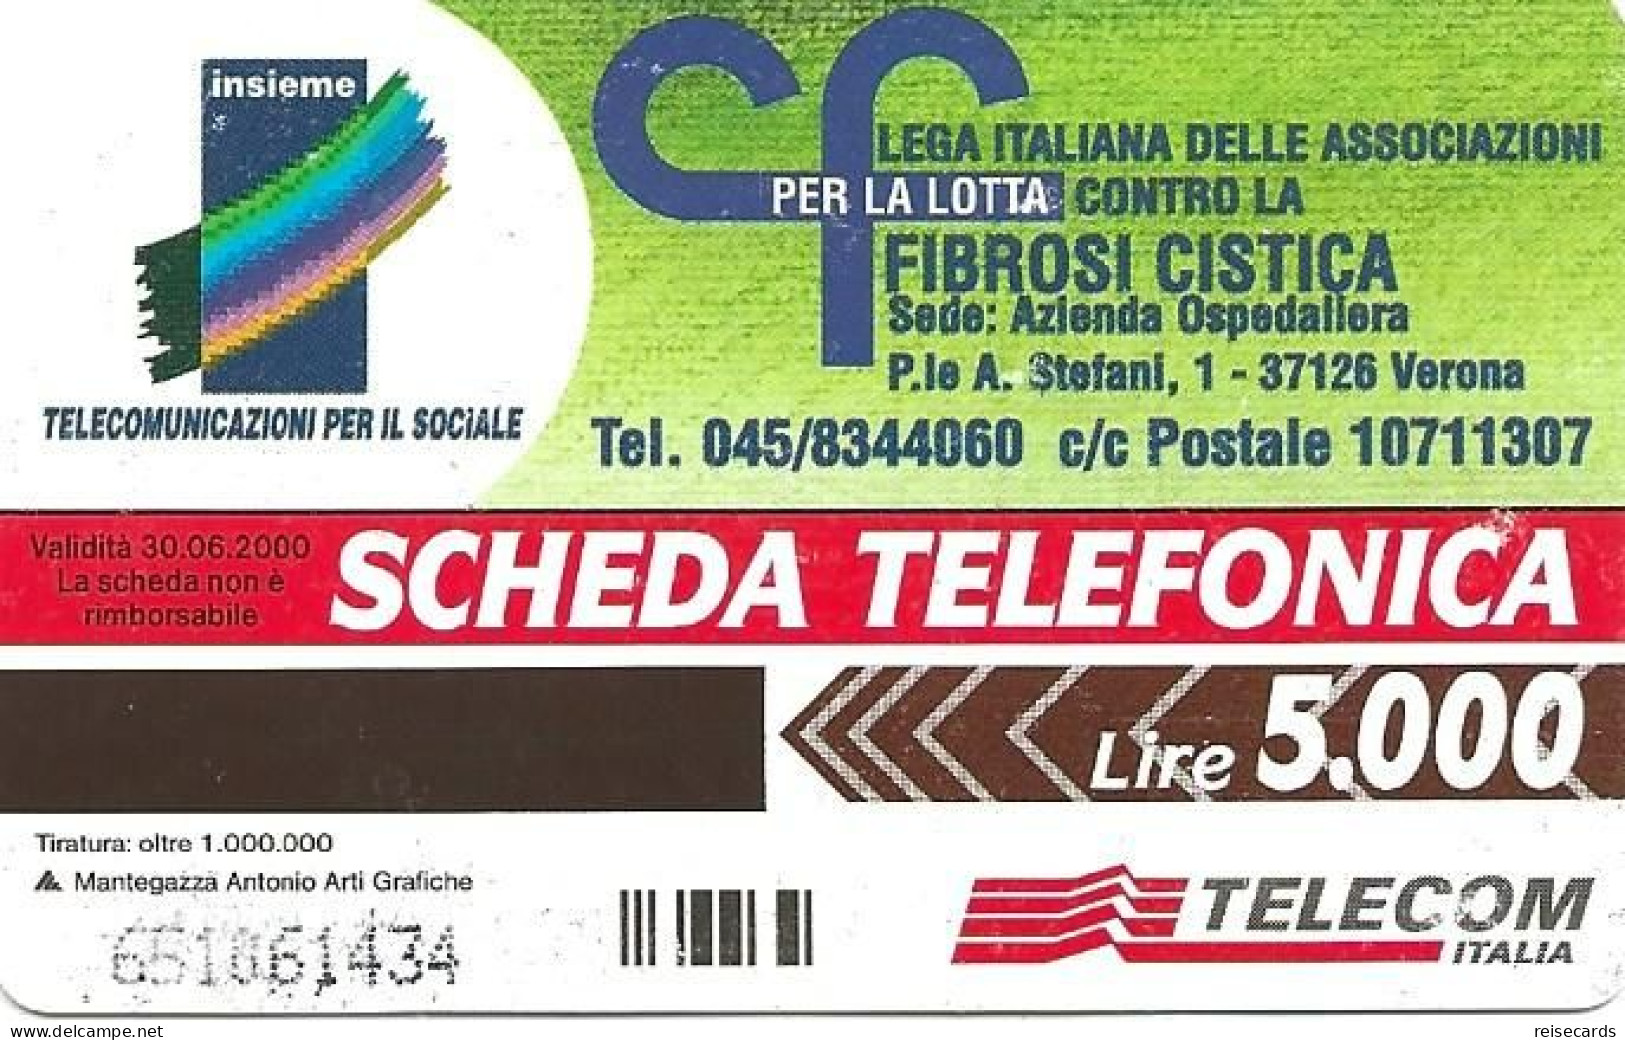 Italy: Telecom Italia - Fibrosi Cistica - Pubbliche Pubblicitarie